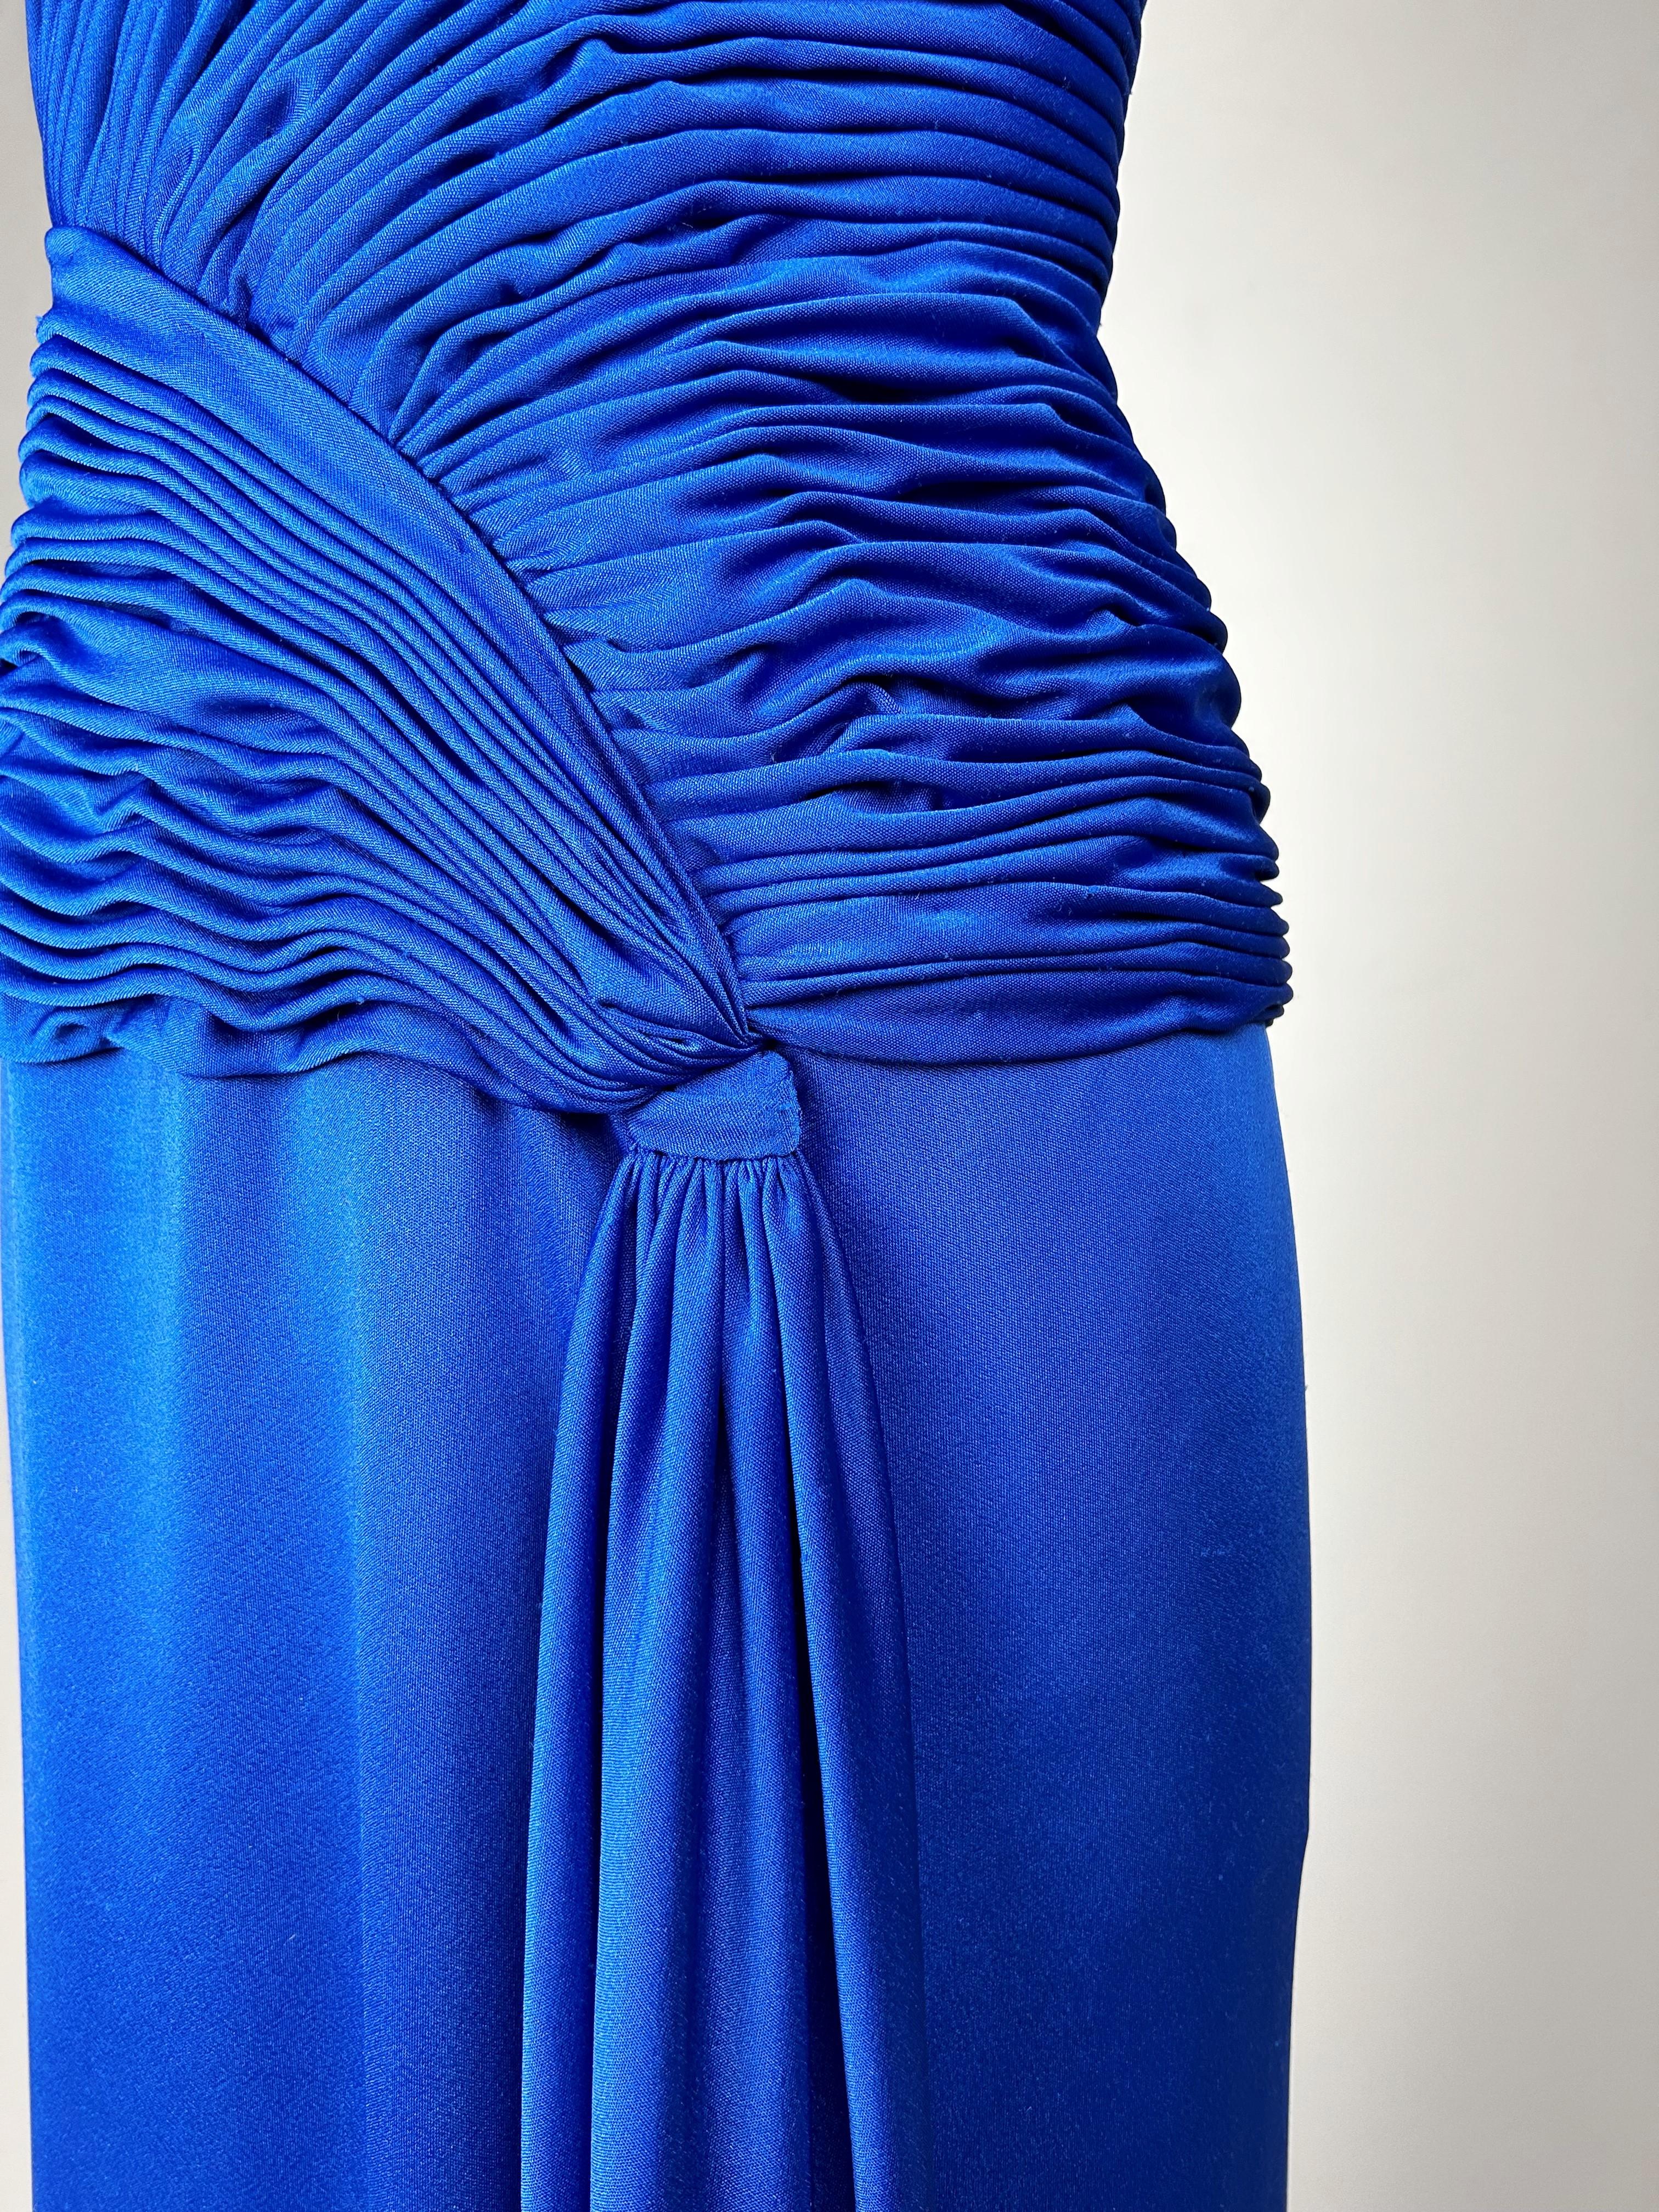 Robe de soirée en jersey de lycra bleu électrique Loris Azzaro Couture, circa 1980 en vente 12